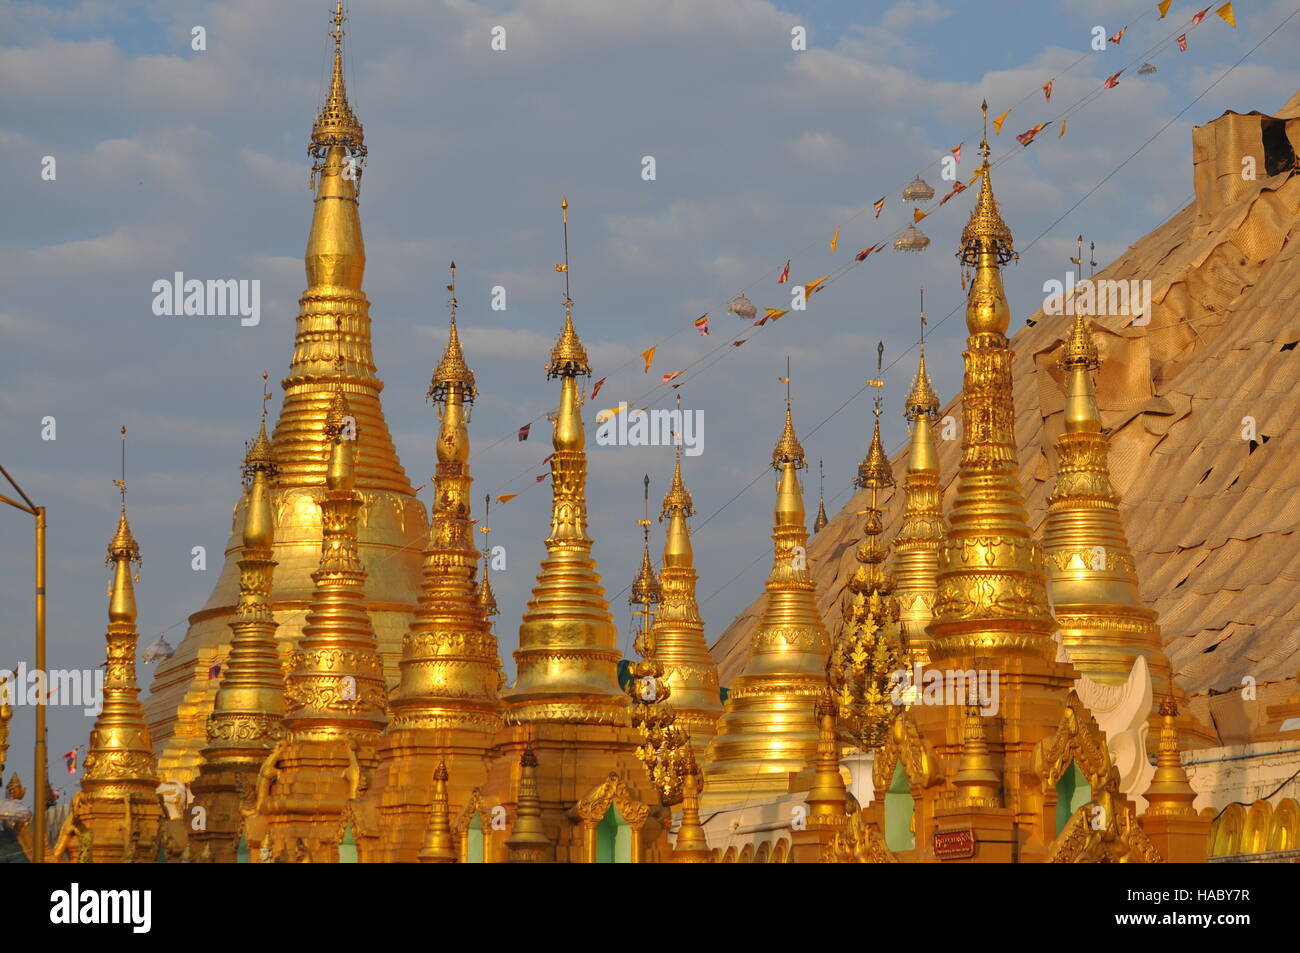 Shwedagon pagoda, Yangon, Myanmar, Rangoon Stock Photo